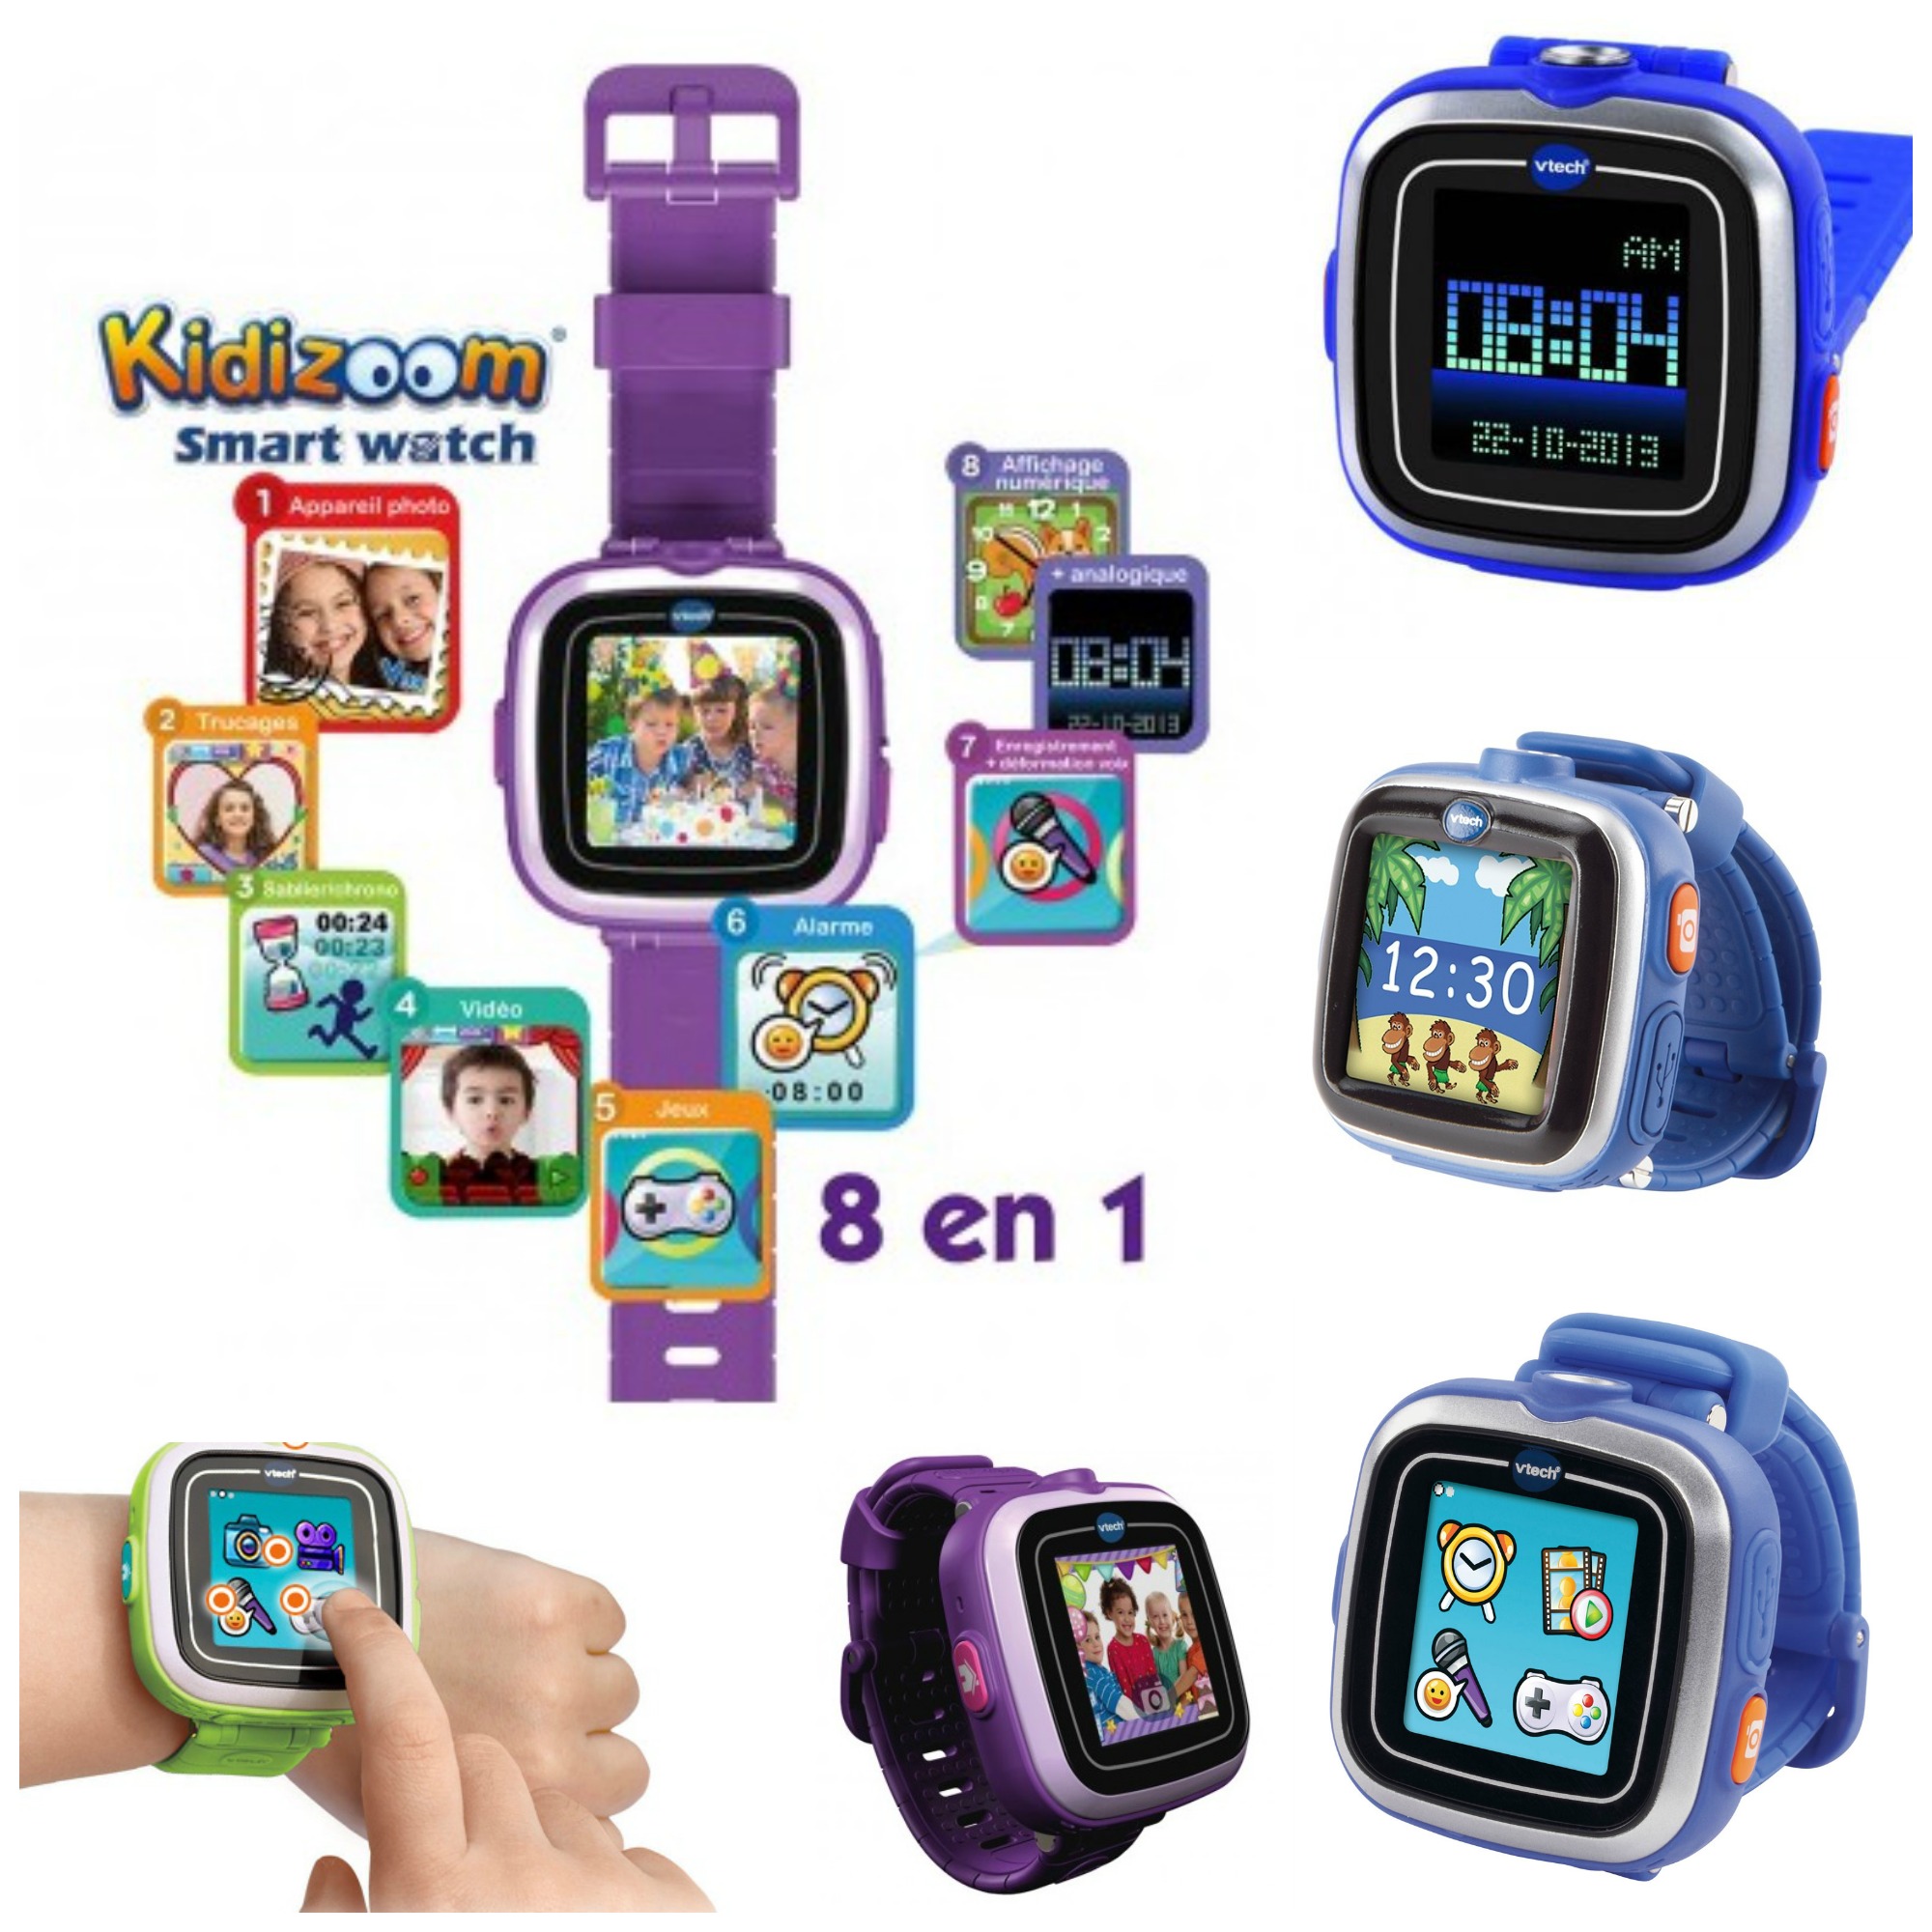 Smart Watch de VTech. La montre tactile pour enfants